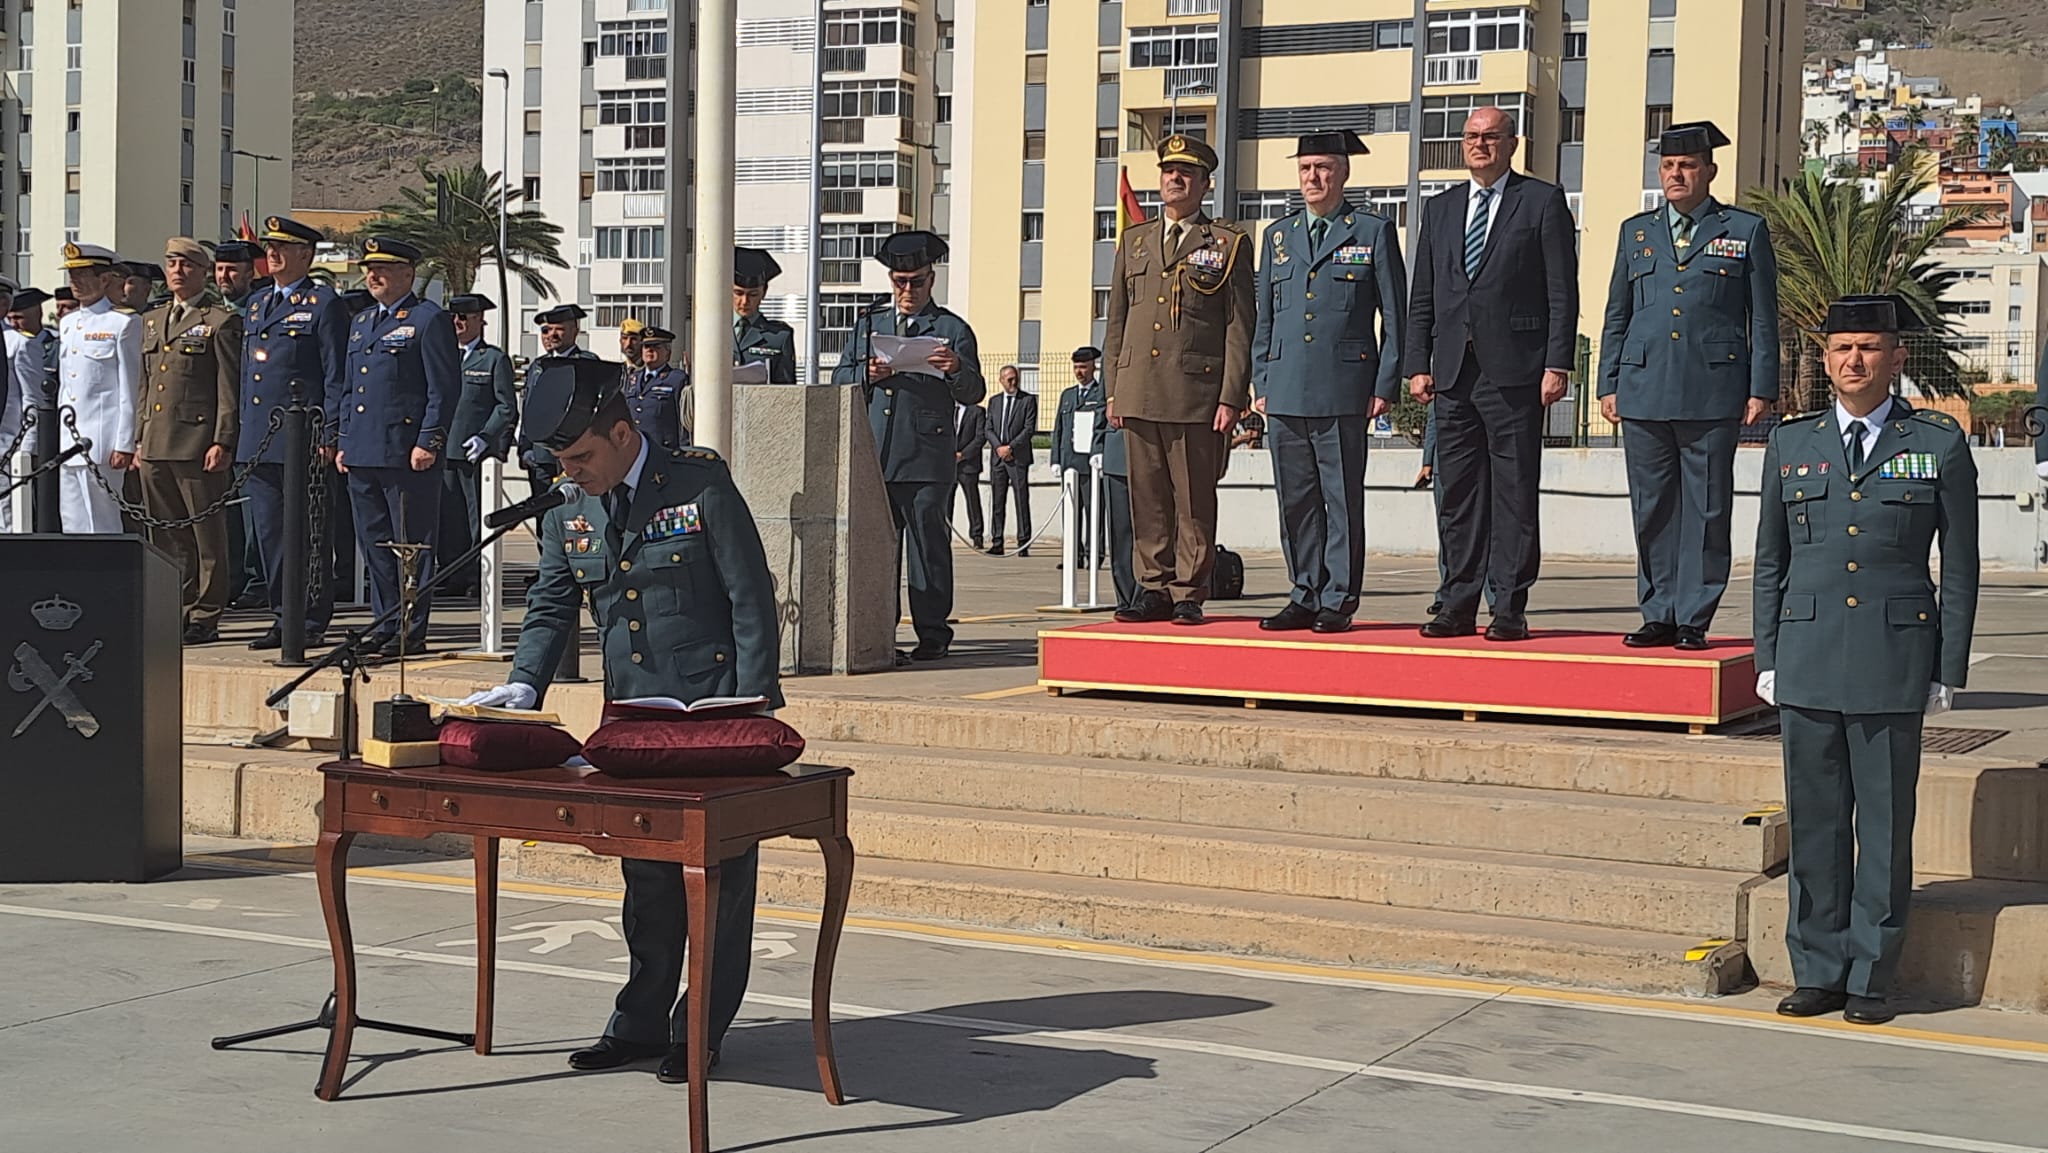 El coronel Javier Peña de Haro toma posesión como nuevo jefe de la Comandancia de Las Palmas